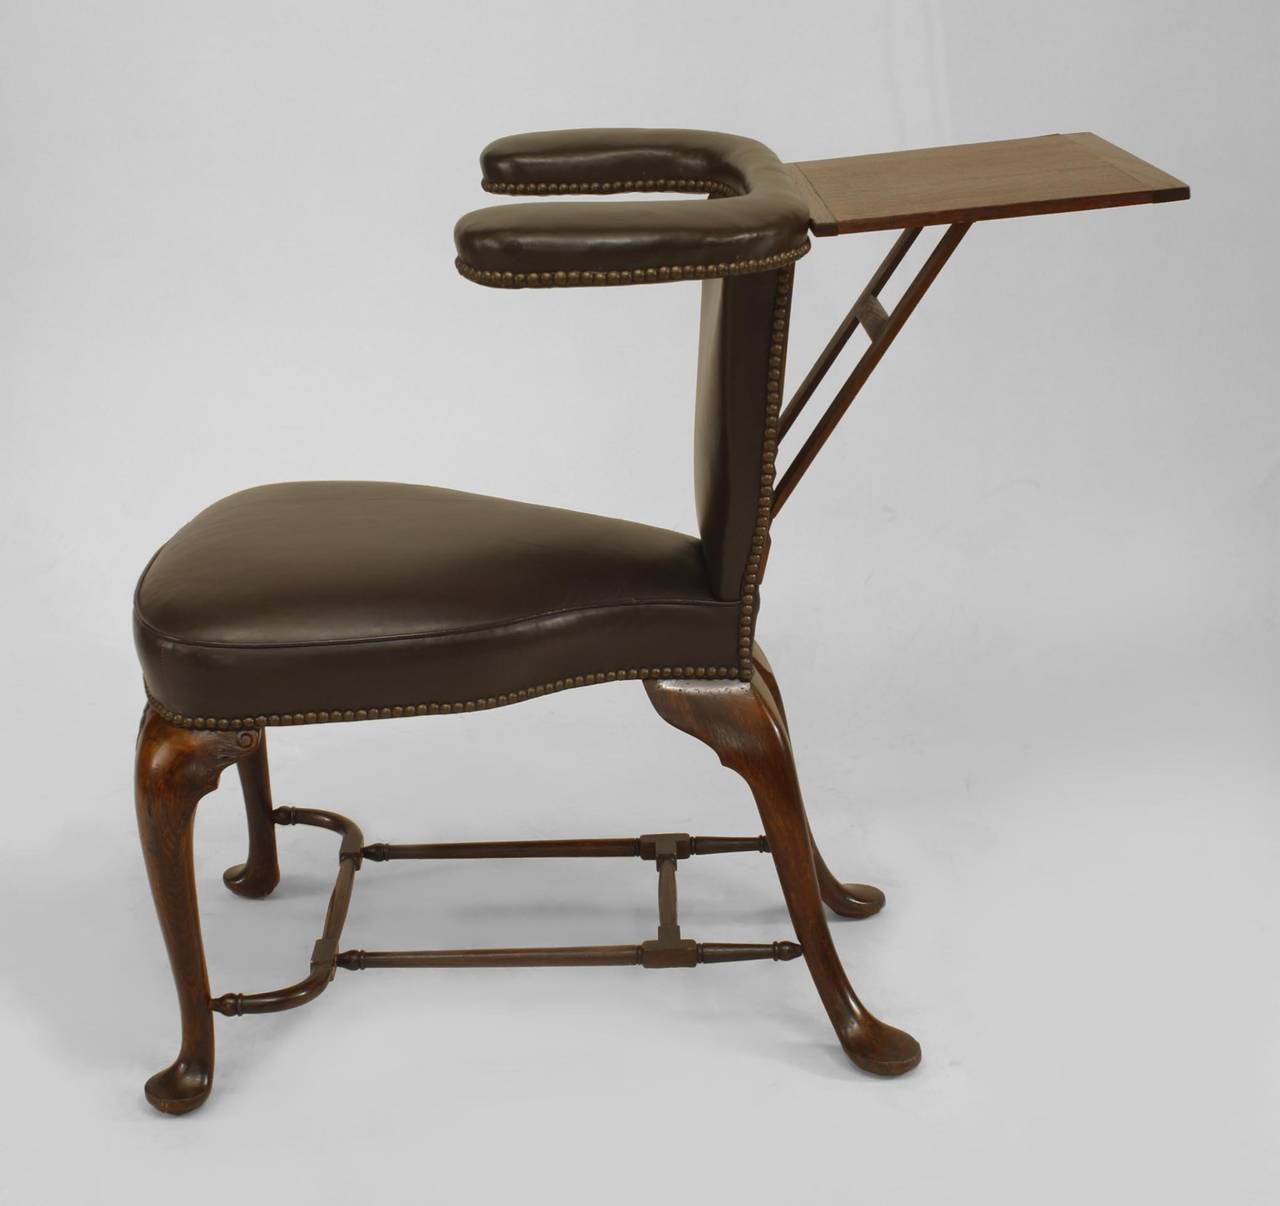 Chaise de lecture anglaise de style Queen Anne (19e siècle) en chêne avec revêtement en cuir brun et tablette rabattable.
